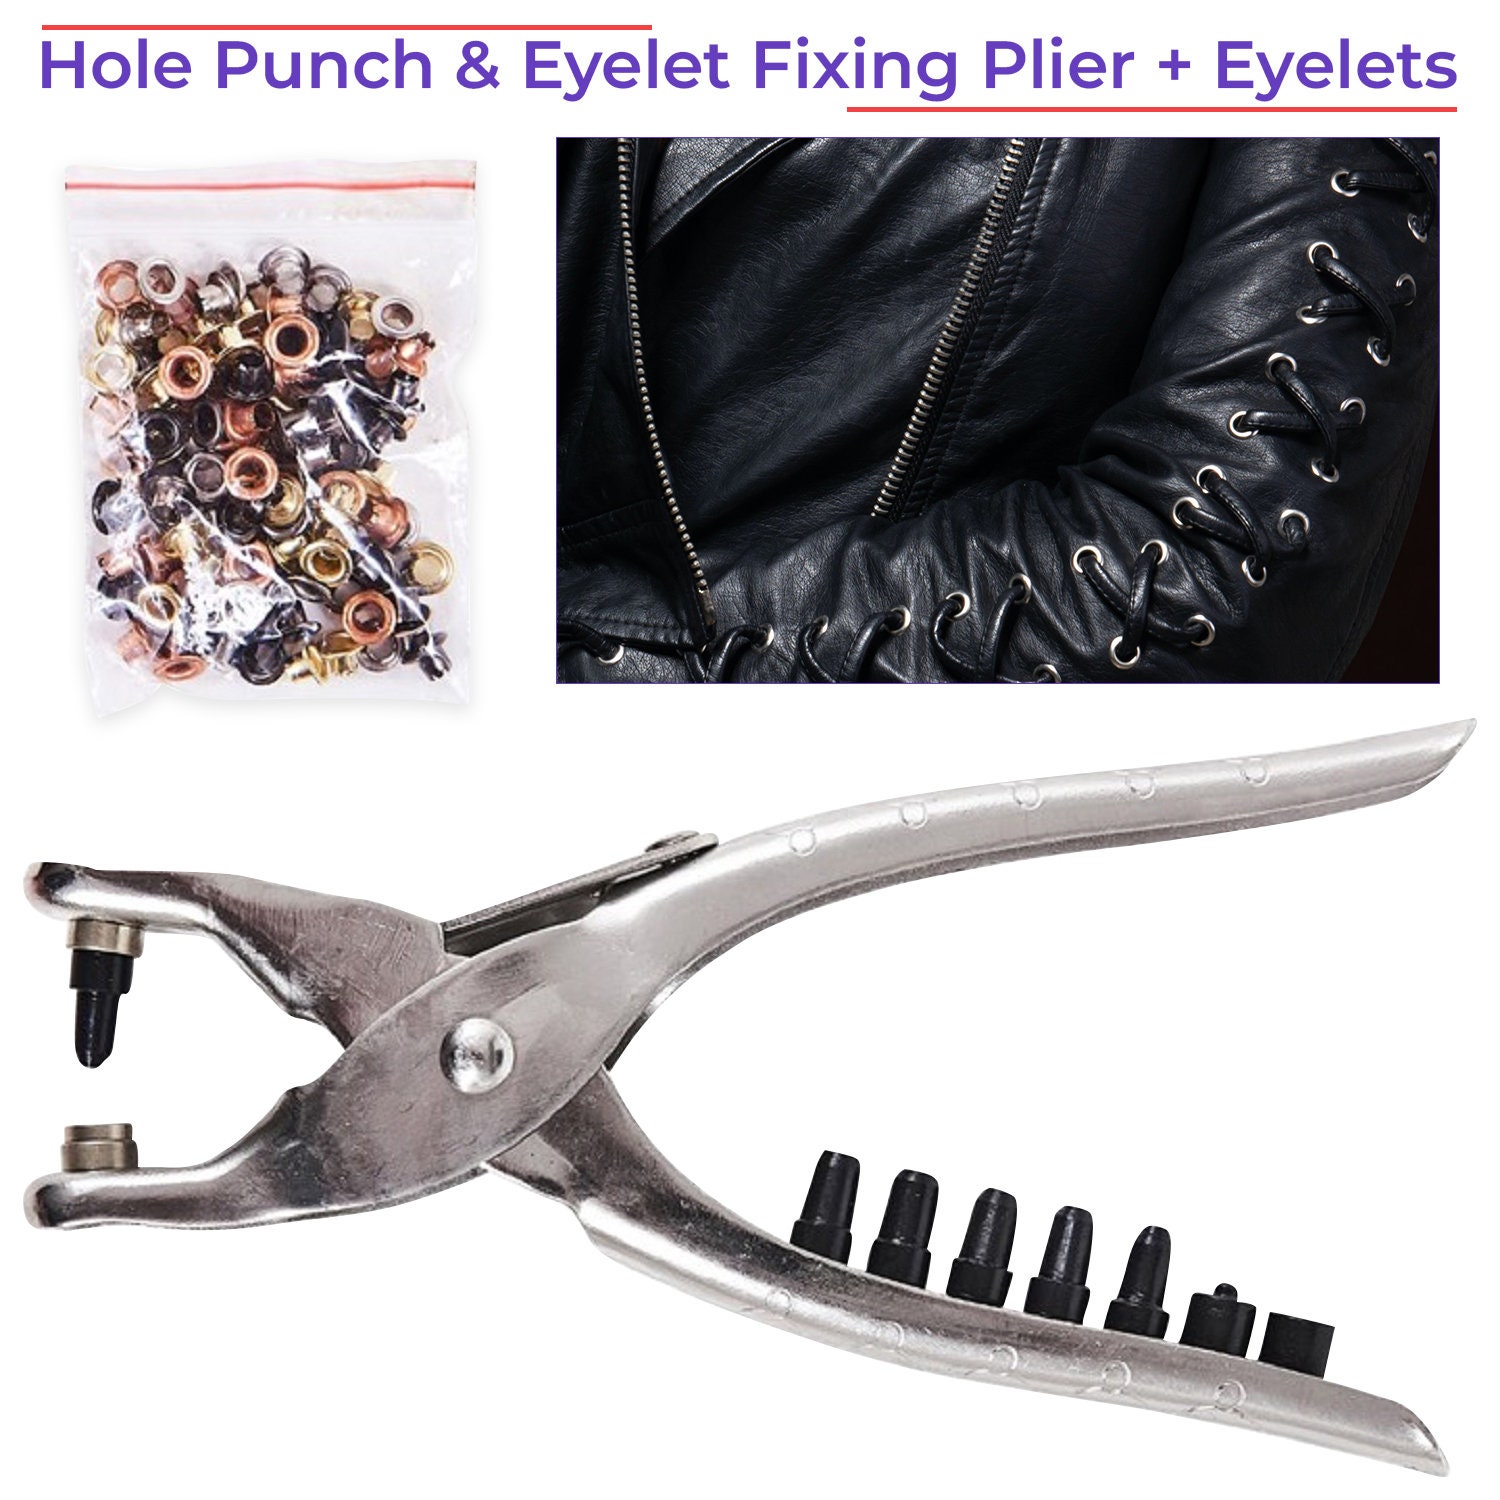 Basics Eyelet Hole Punch Plier with 100-piece Eyelets